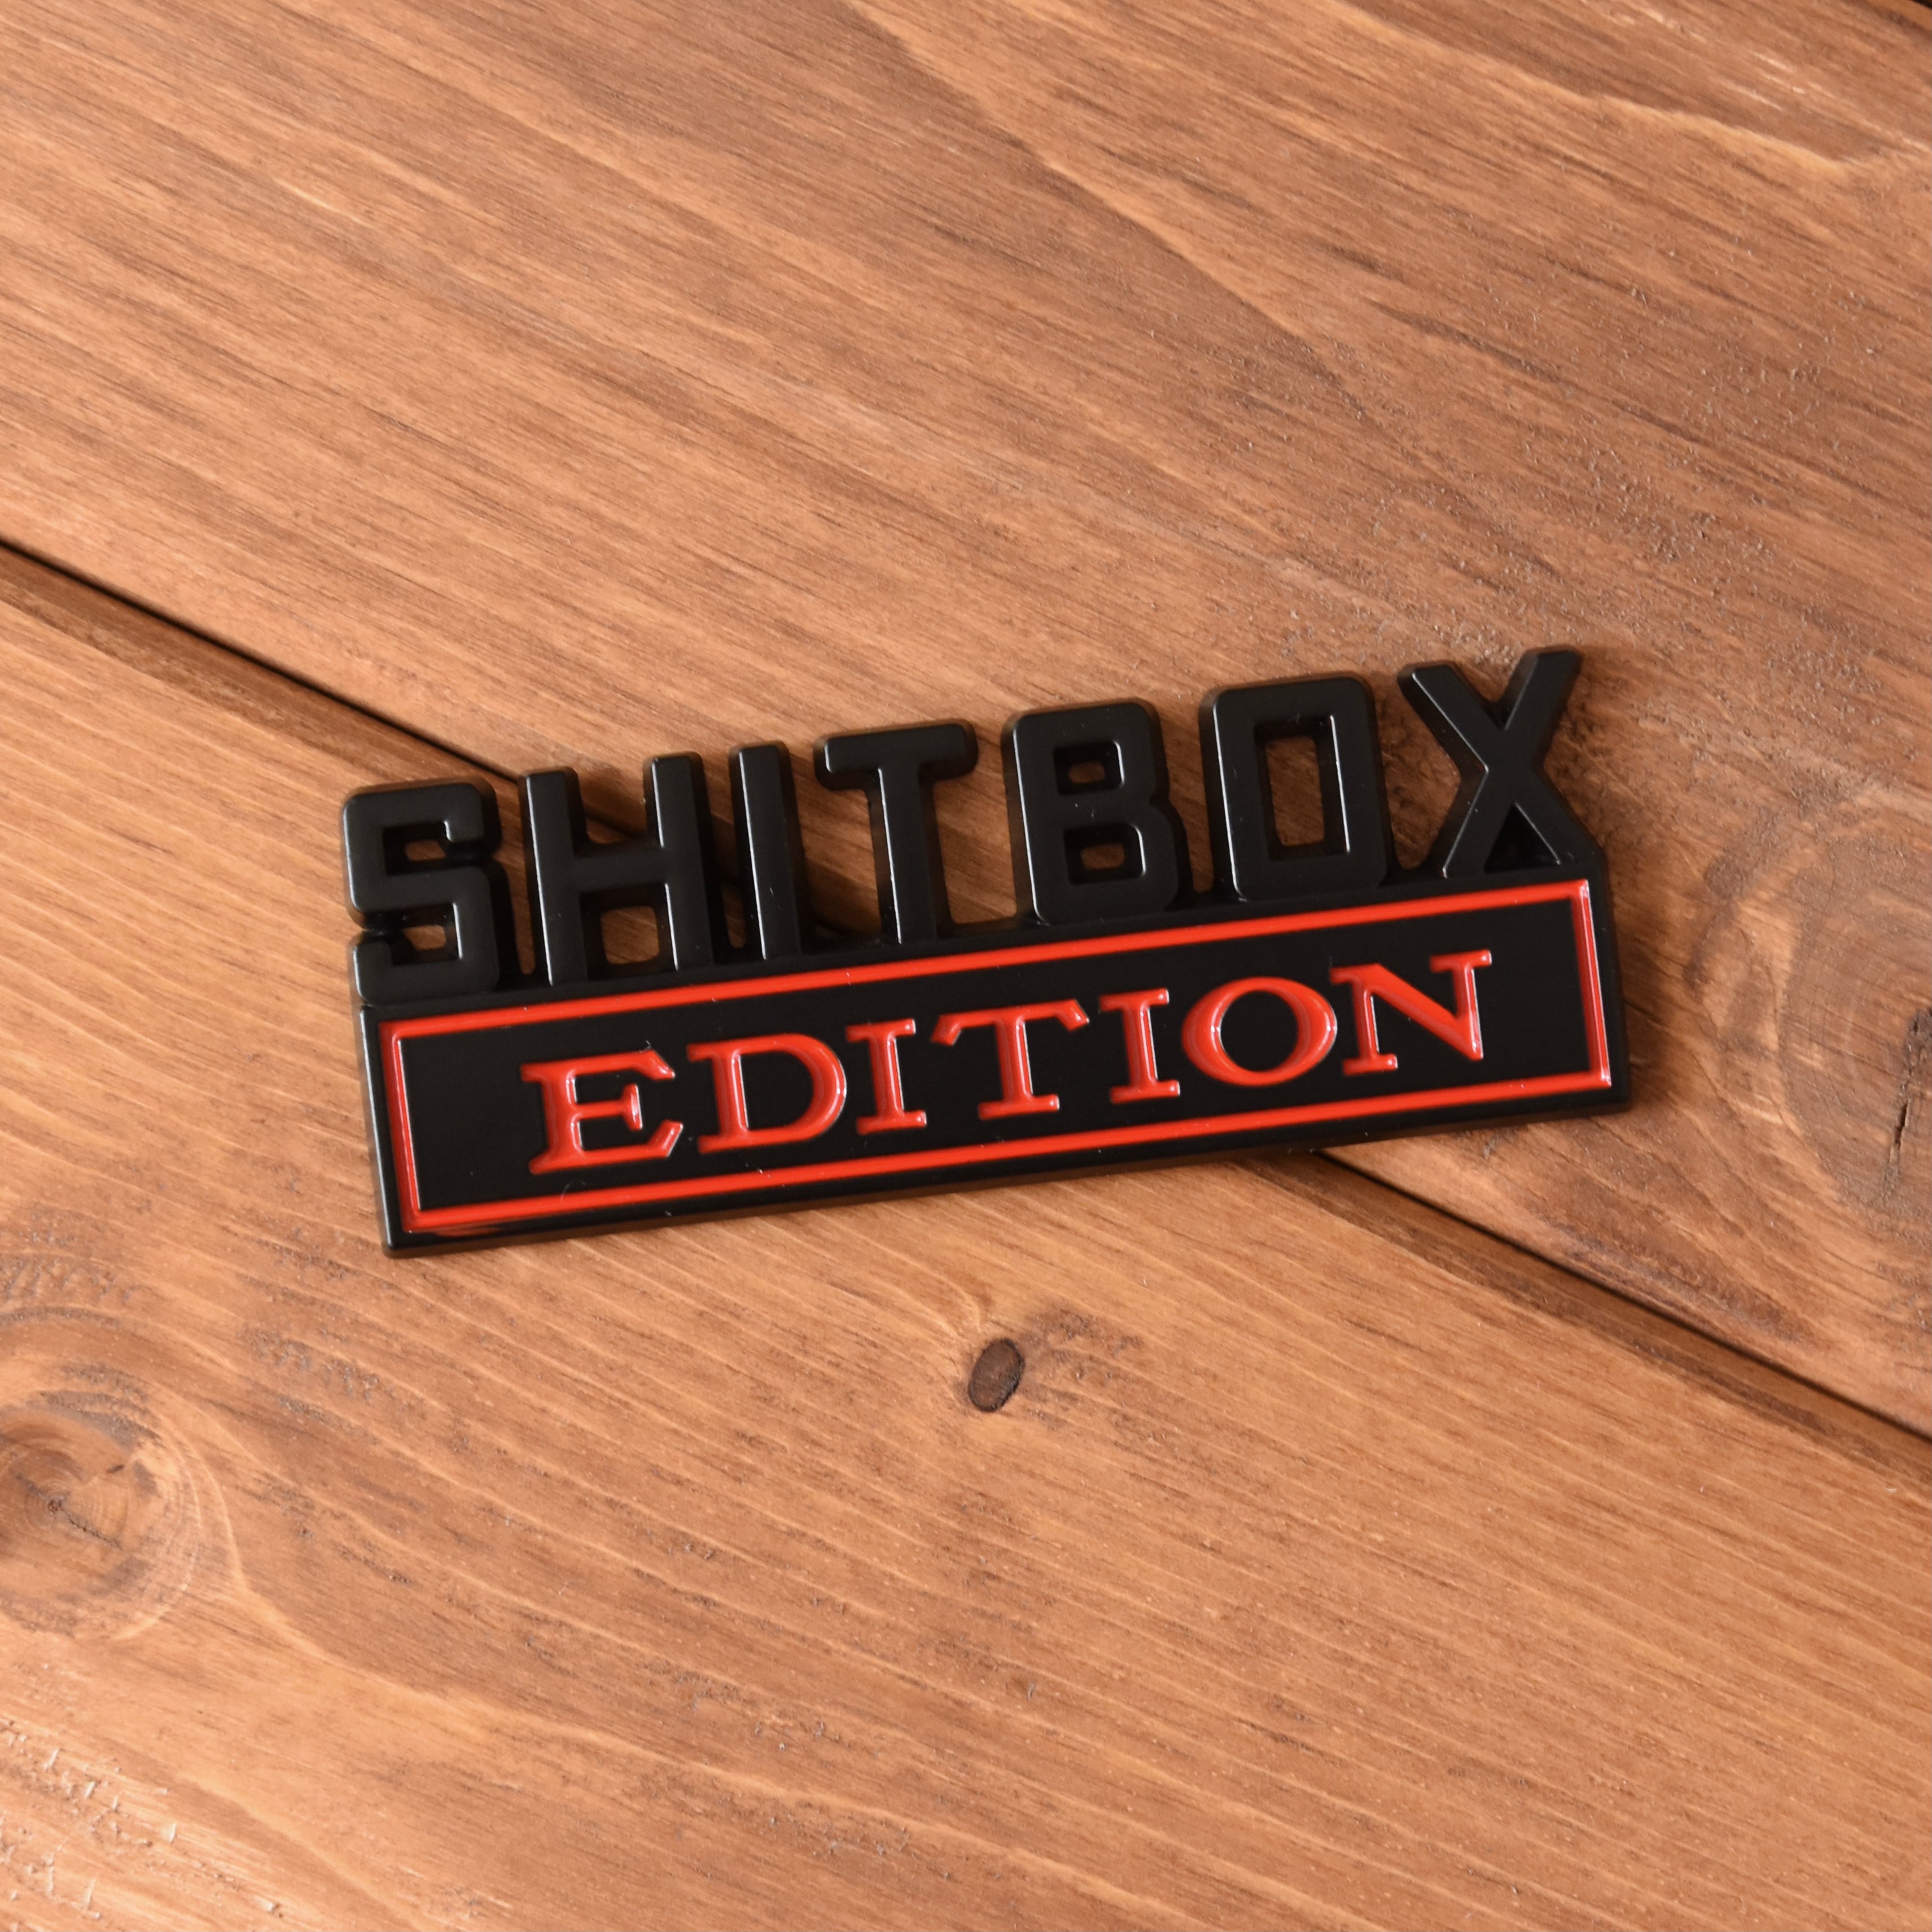 Shitbox Edition カーエンブレム ステッカー レッド スモール Decal MOTTAGE アートな車 中泊グッズ、カーキャンプ用品の専門店